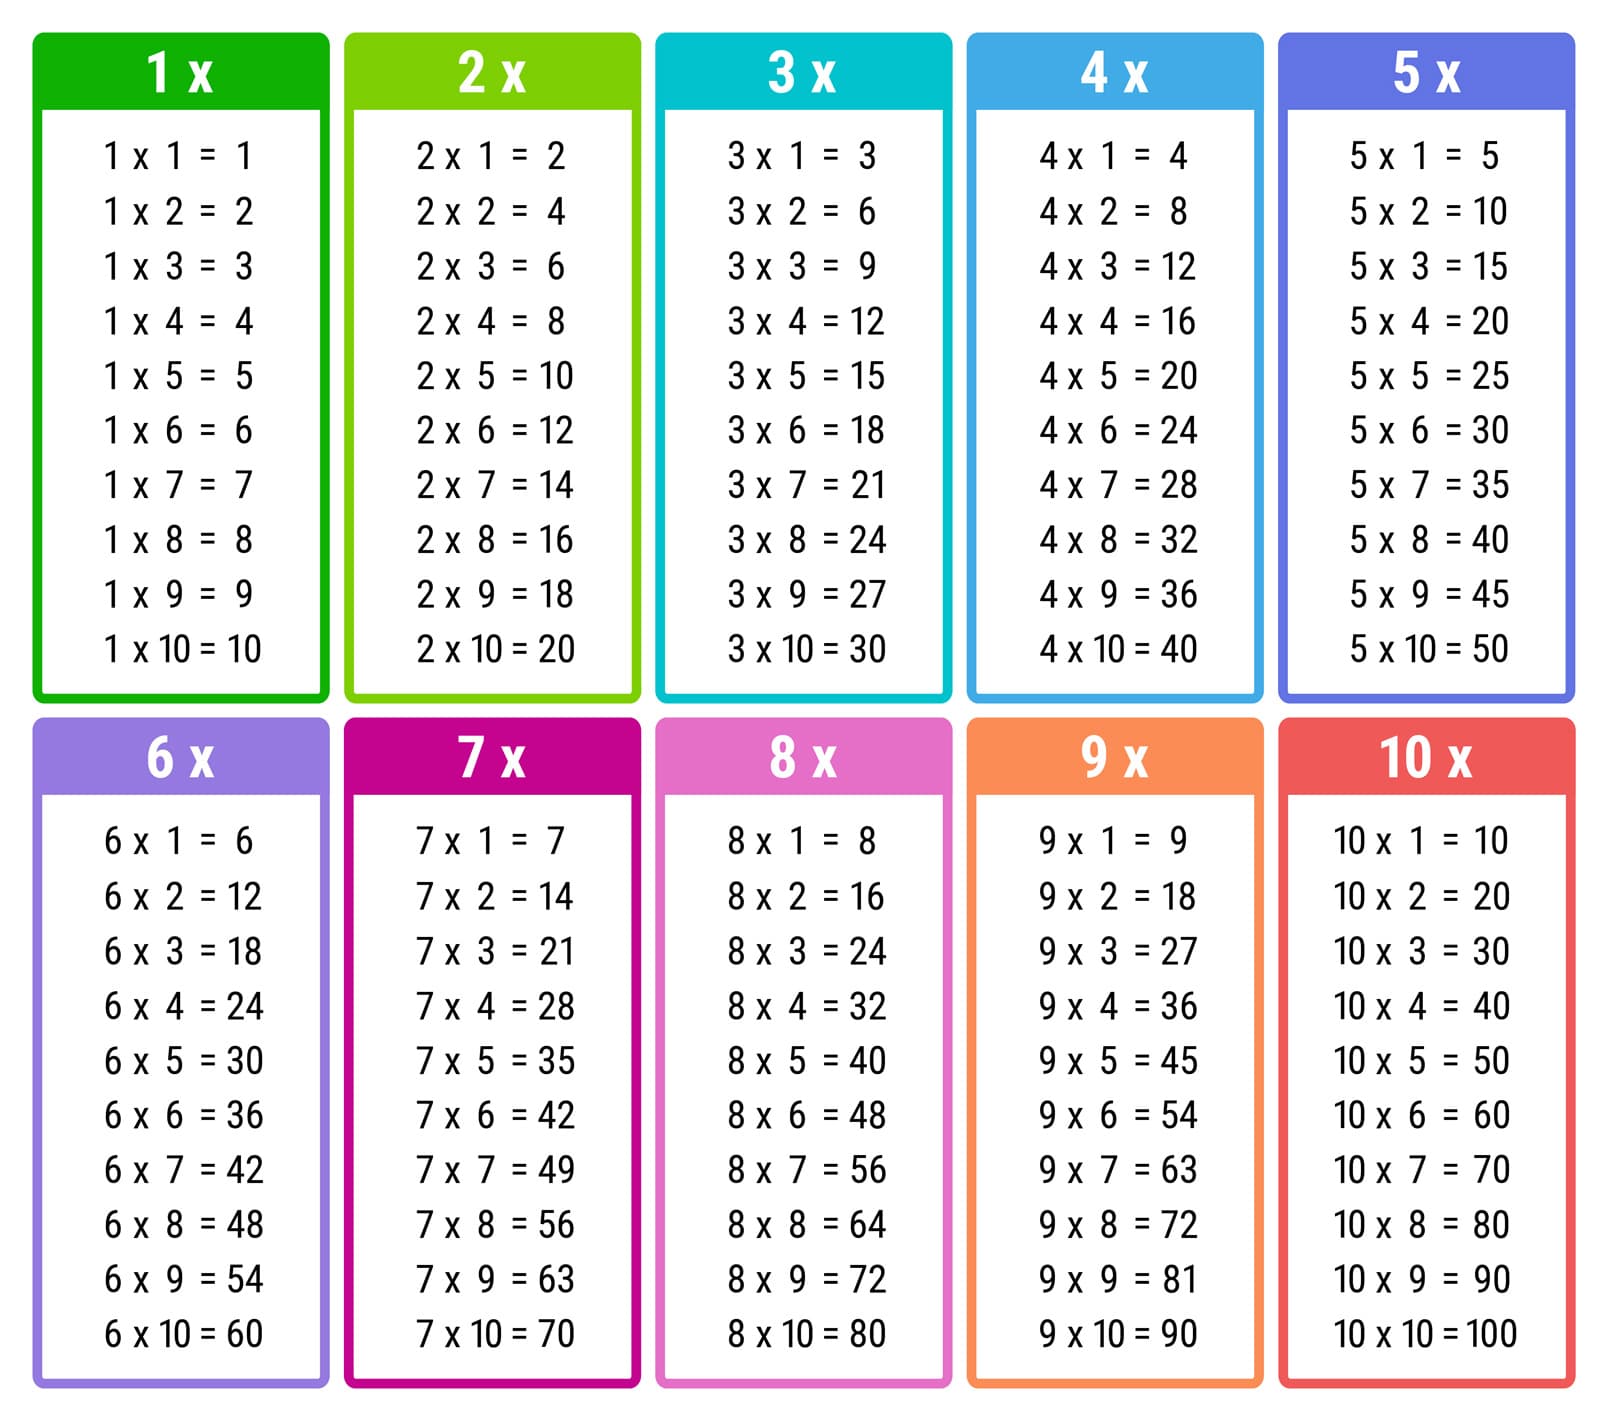 Toutes les Tables de multiplication à Imprimer (plusieurs coloris